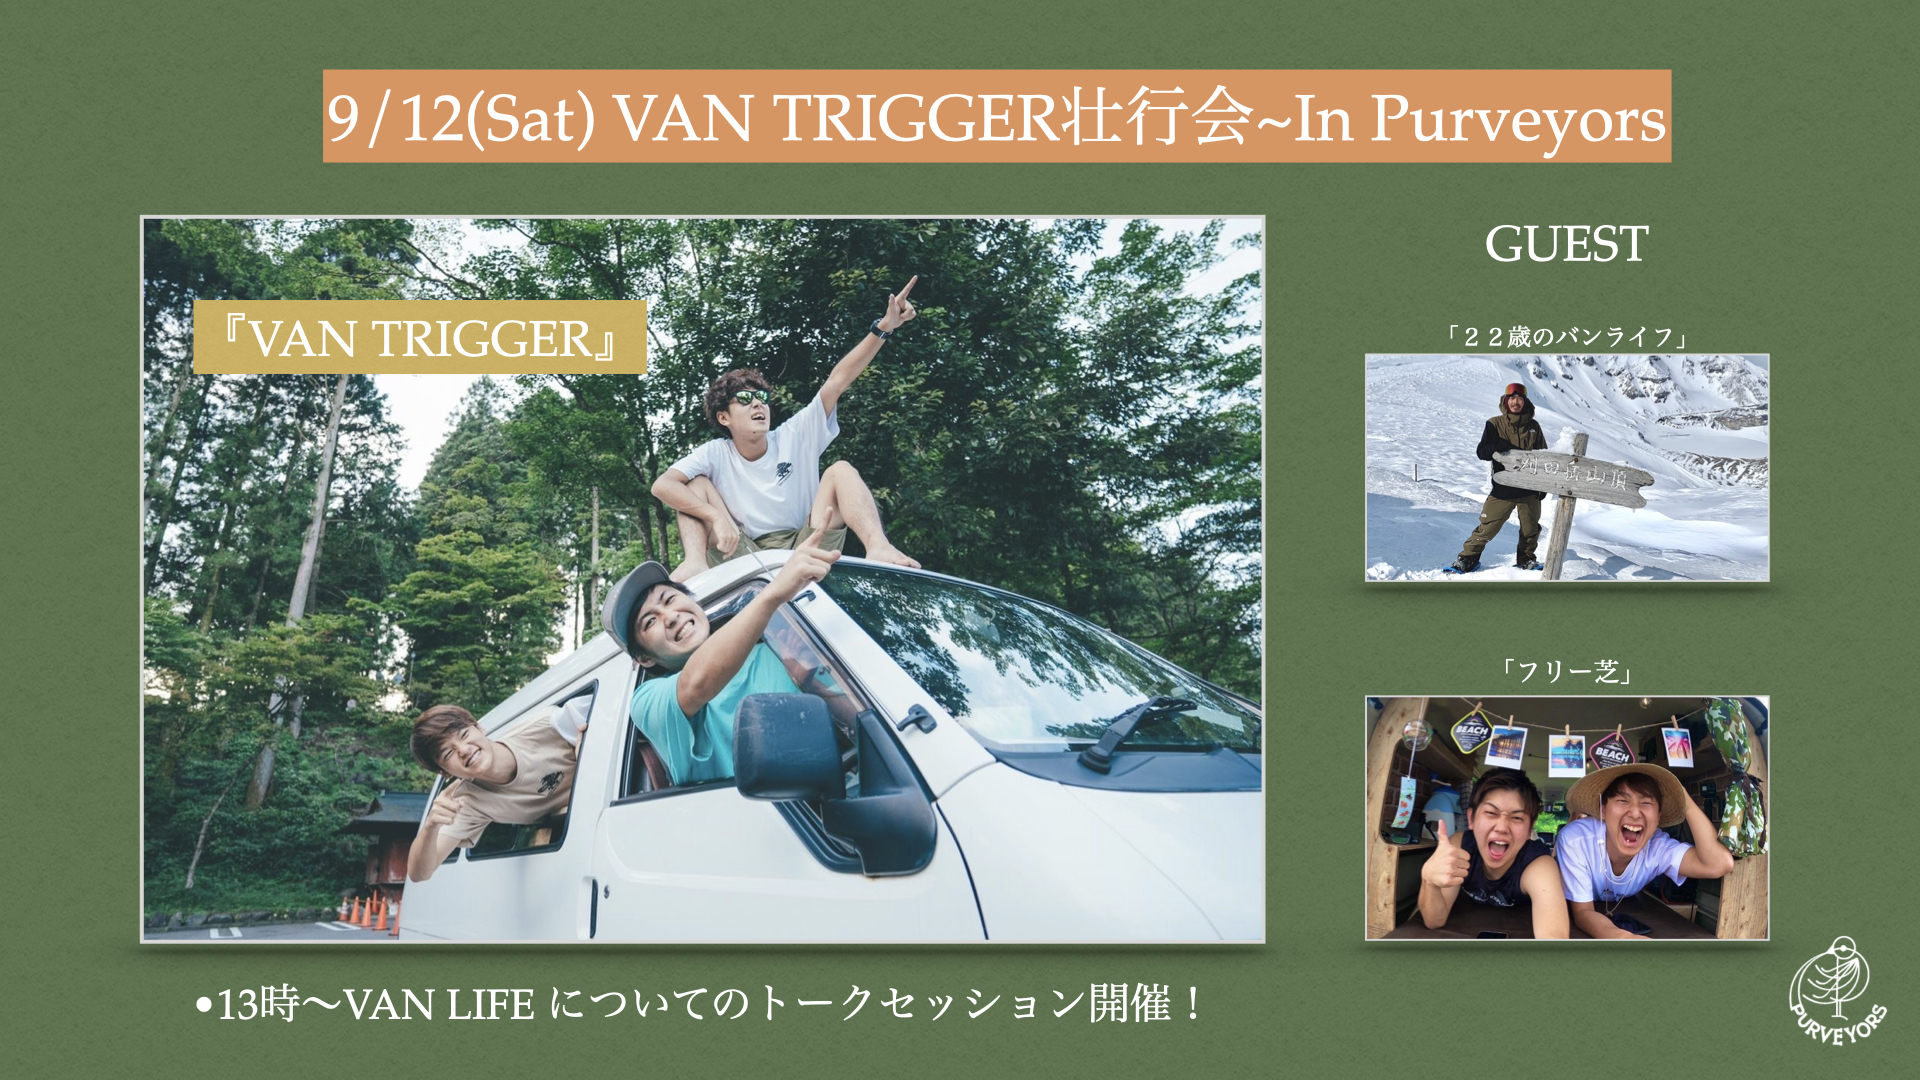 9/12 VAN TRIGGER 壮行会 ~ In Purveyors 